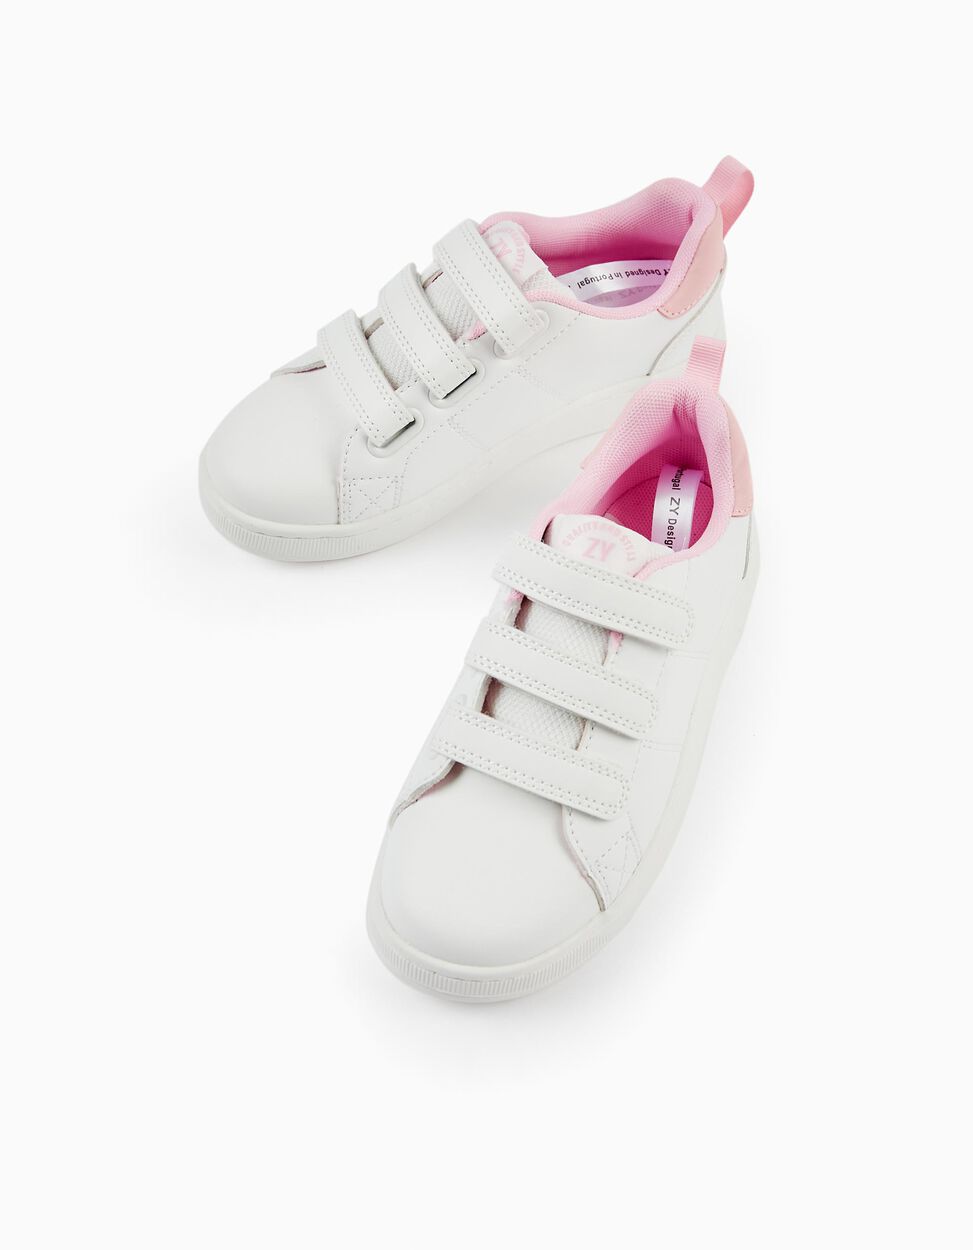 Zapatillas para Bebé Niña 'ZY 1996', Blanco/Rosa